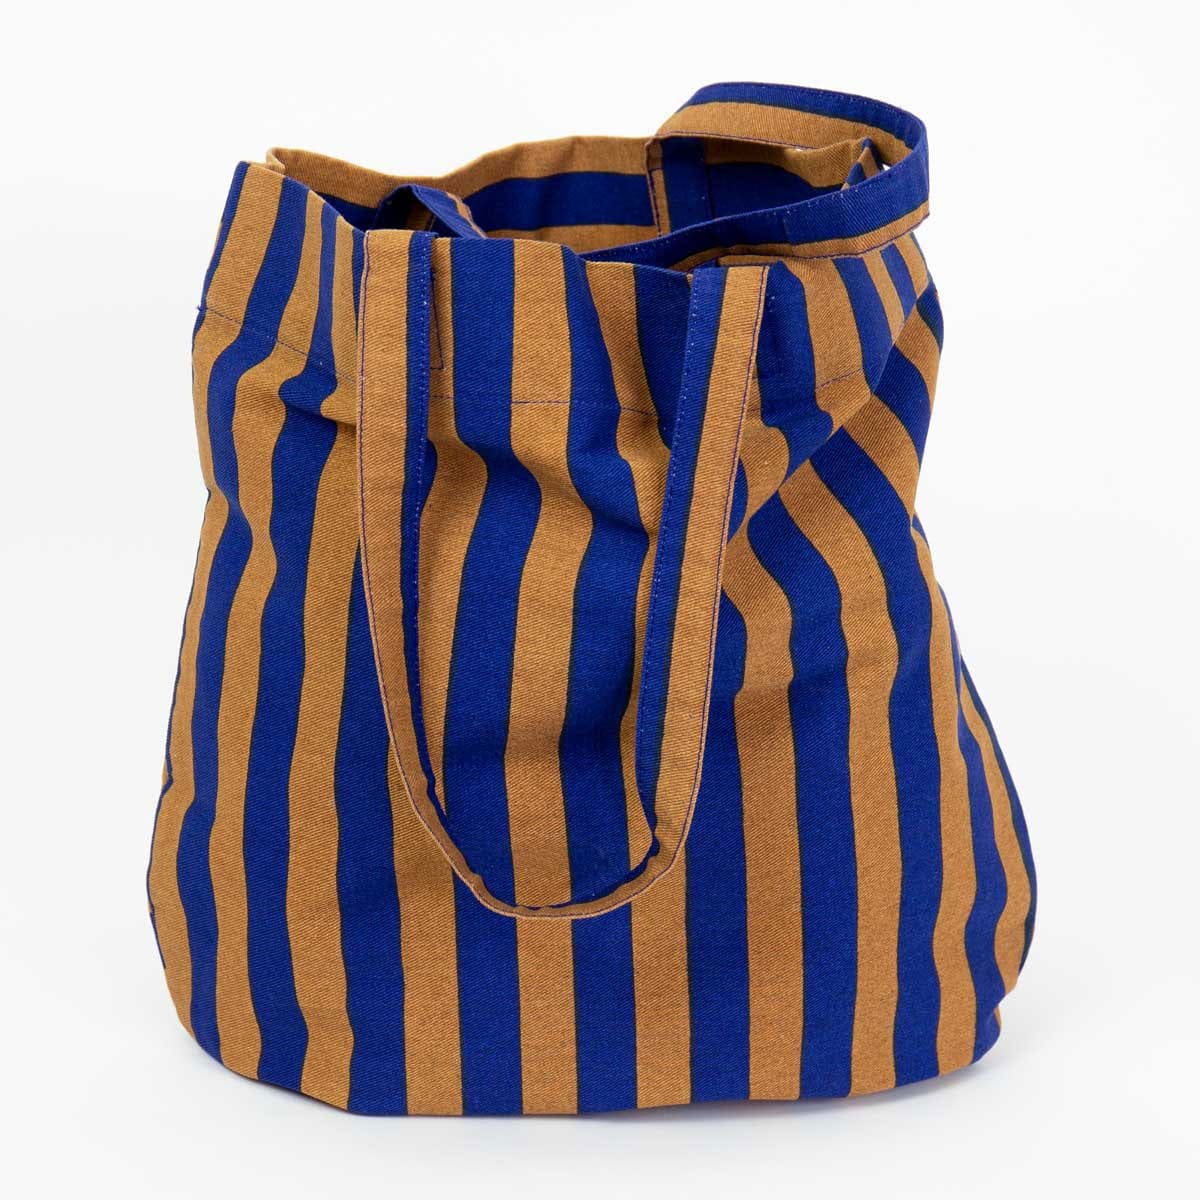 RANDA Väska, senap/blå från A World of Craft